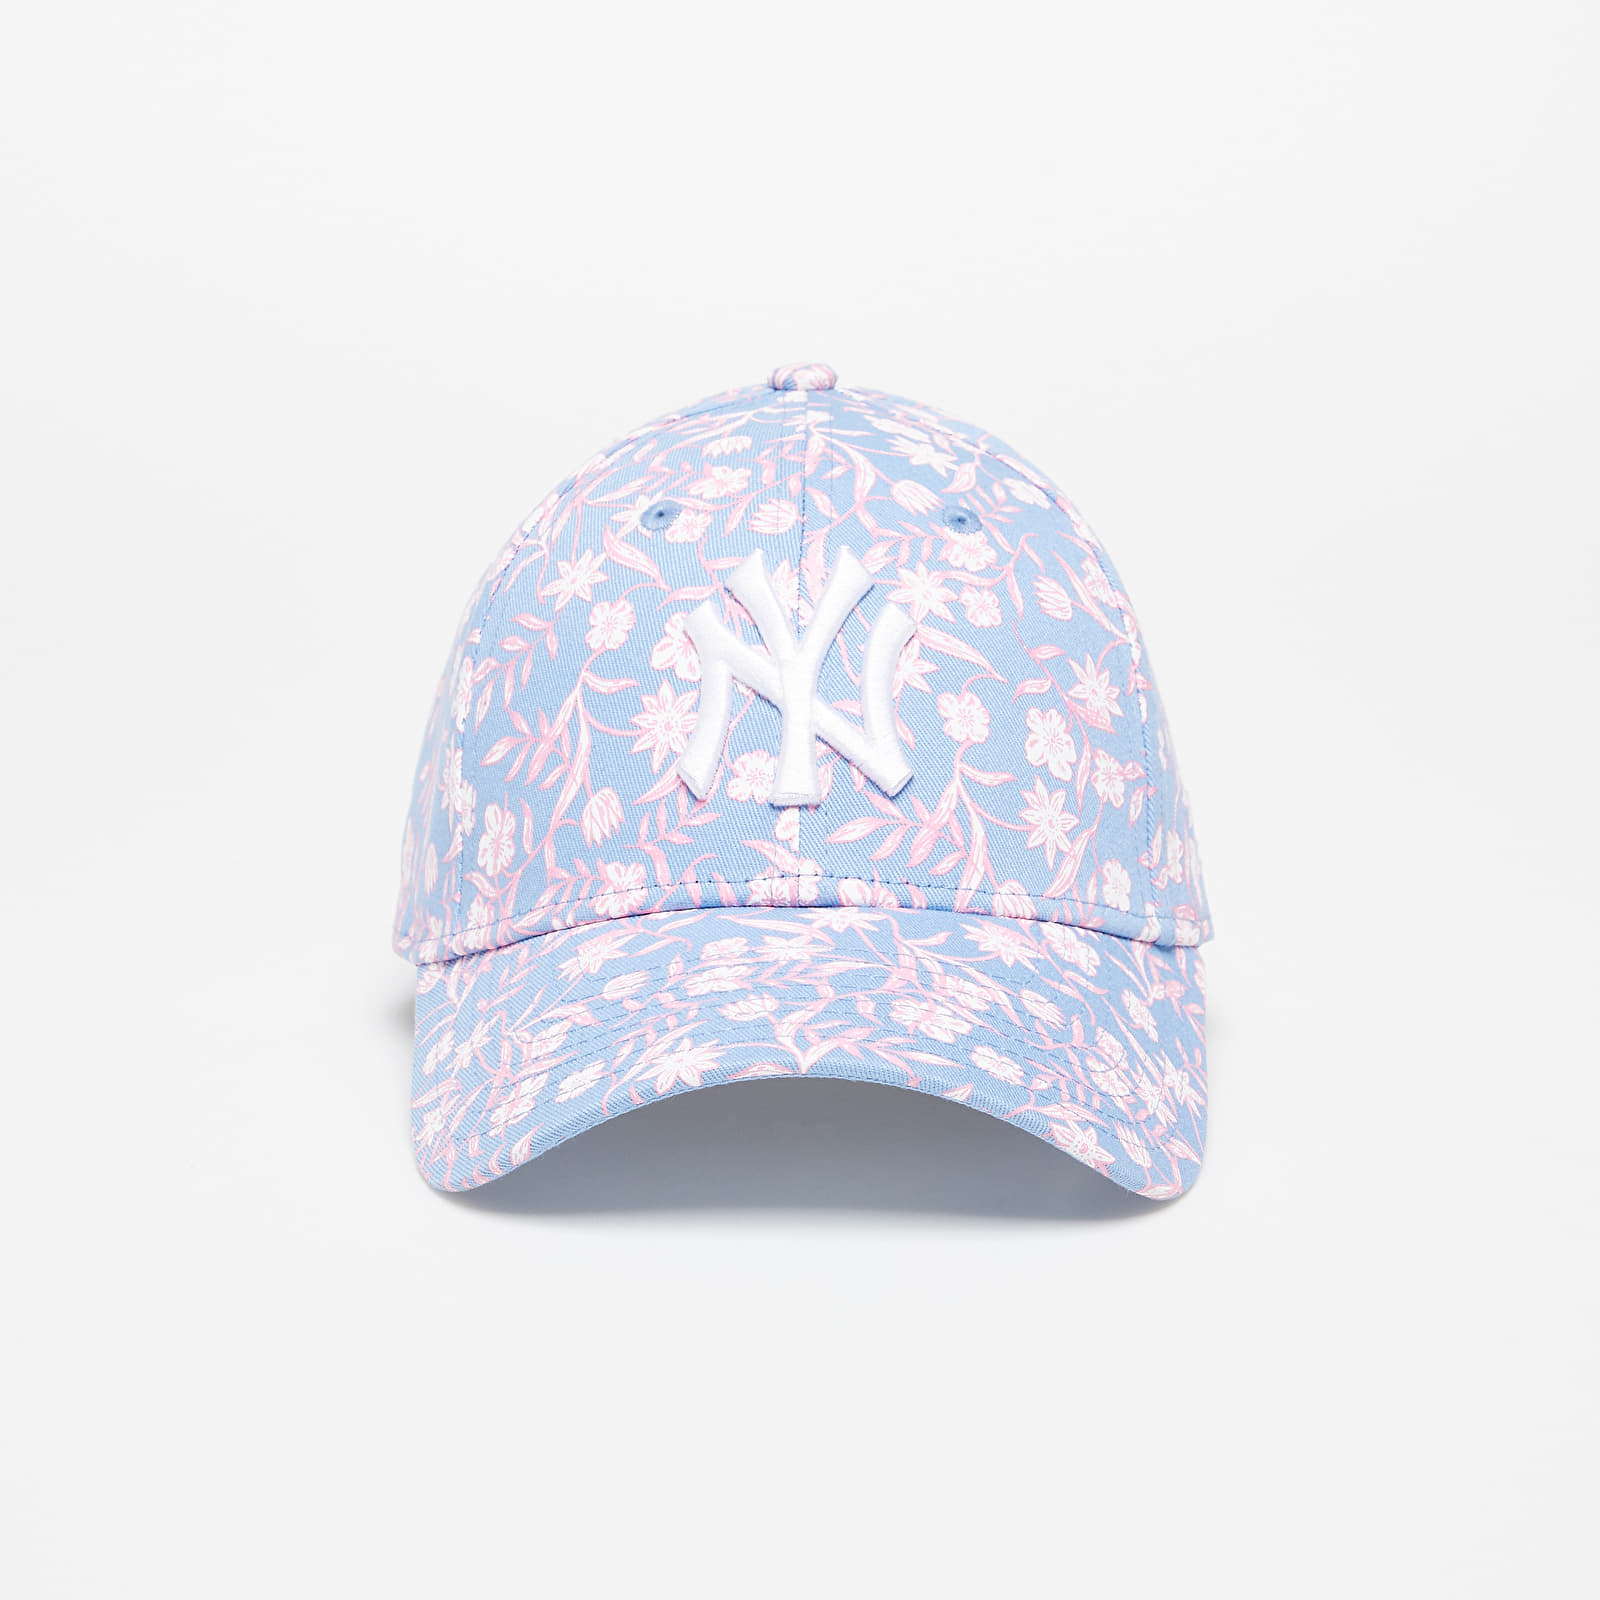 Καπέλα New Era New York Yankees Floral Womens 9FORTY Cap Light Blue/ Pink/ White